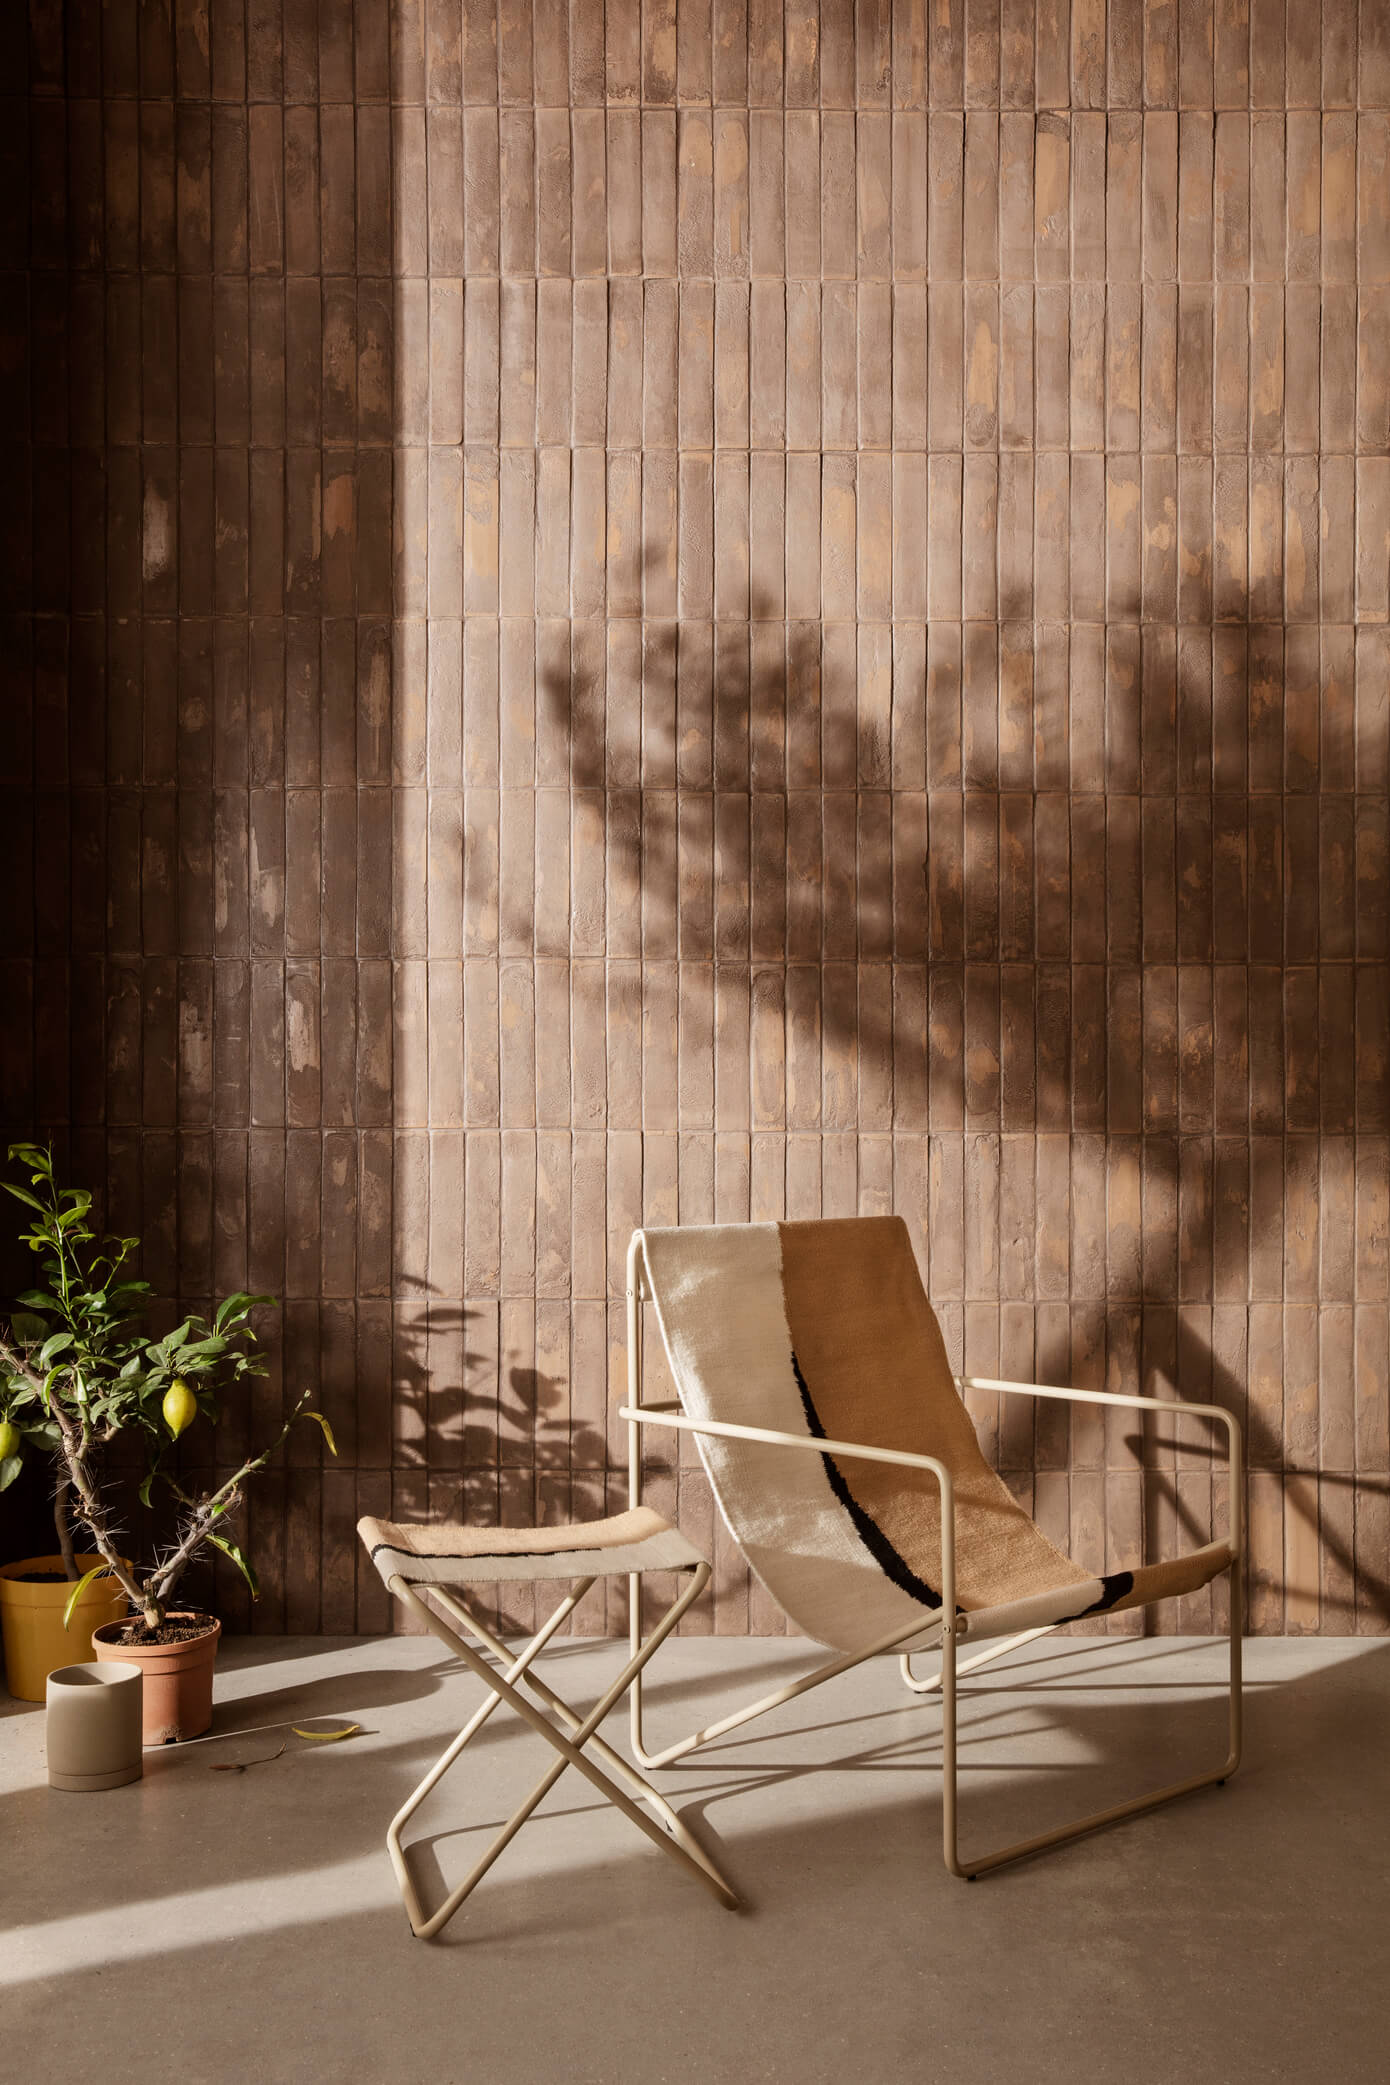 Desert Lounge Chair | Black Frame + Soil Fabric | by ferm Living - Lifestory - ferm Living